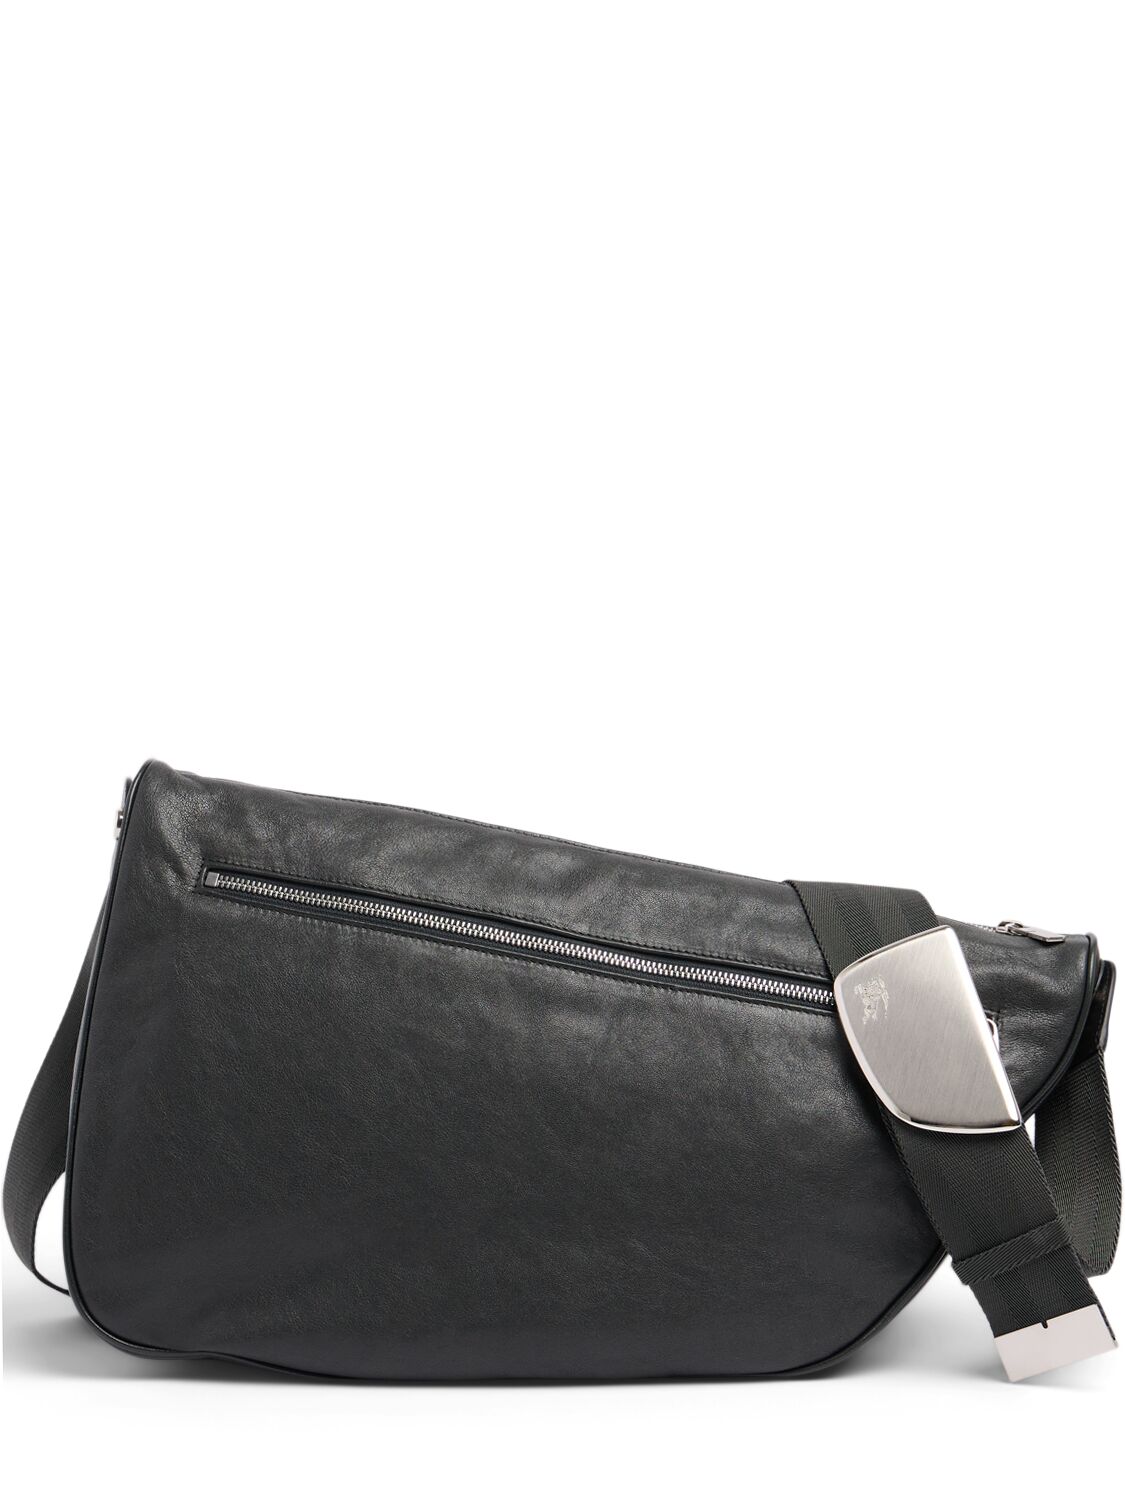 Image of Large Shield Leather Messenger Bag